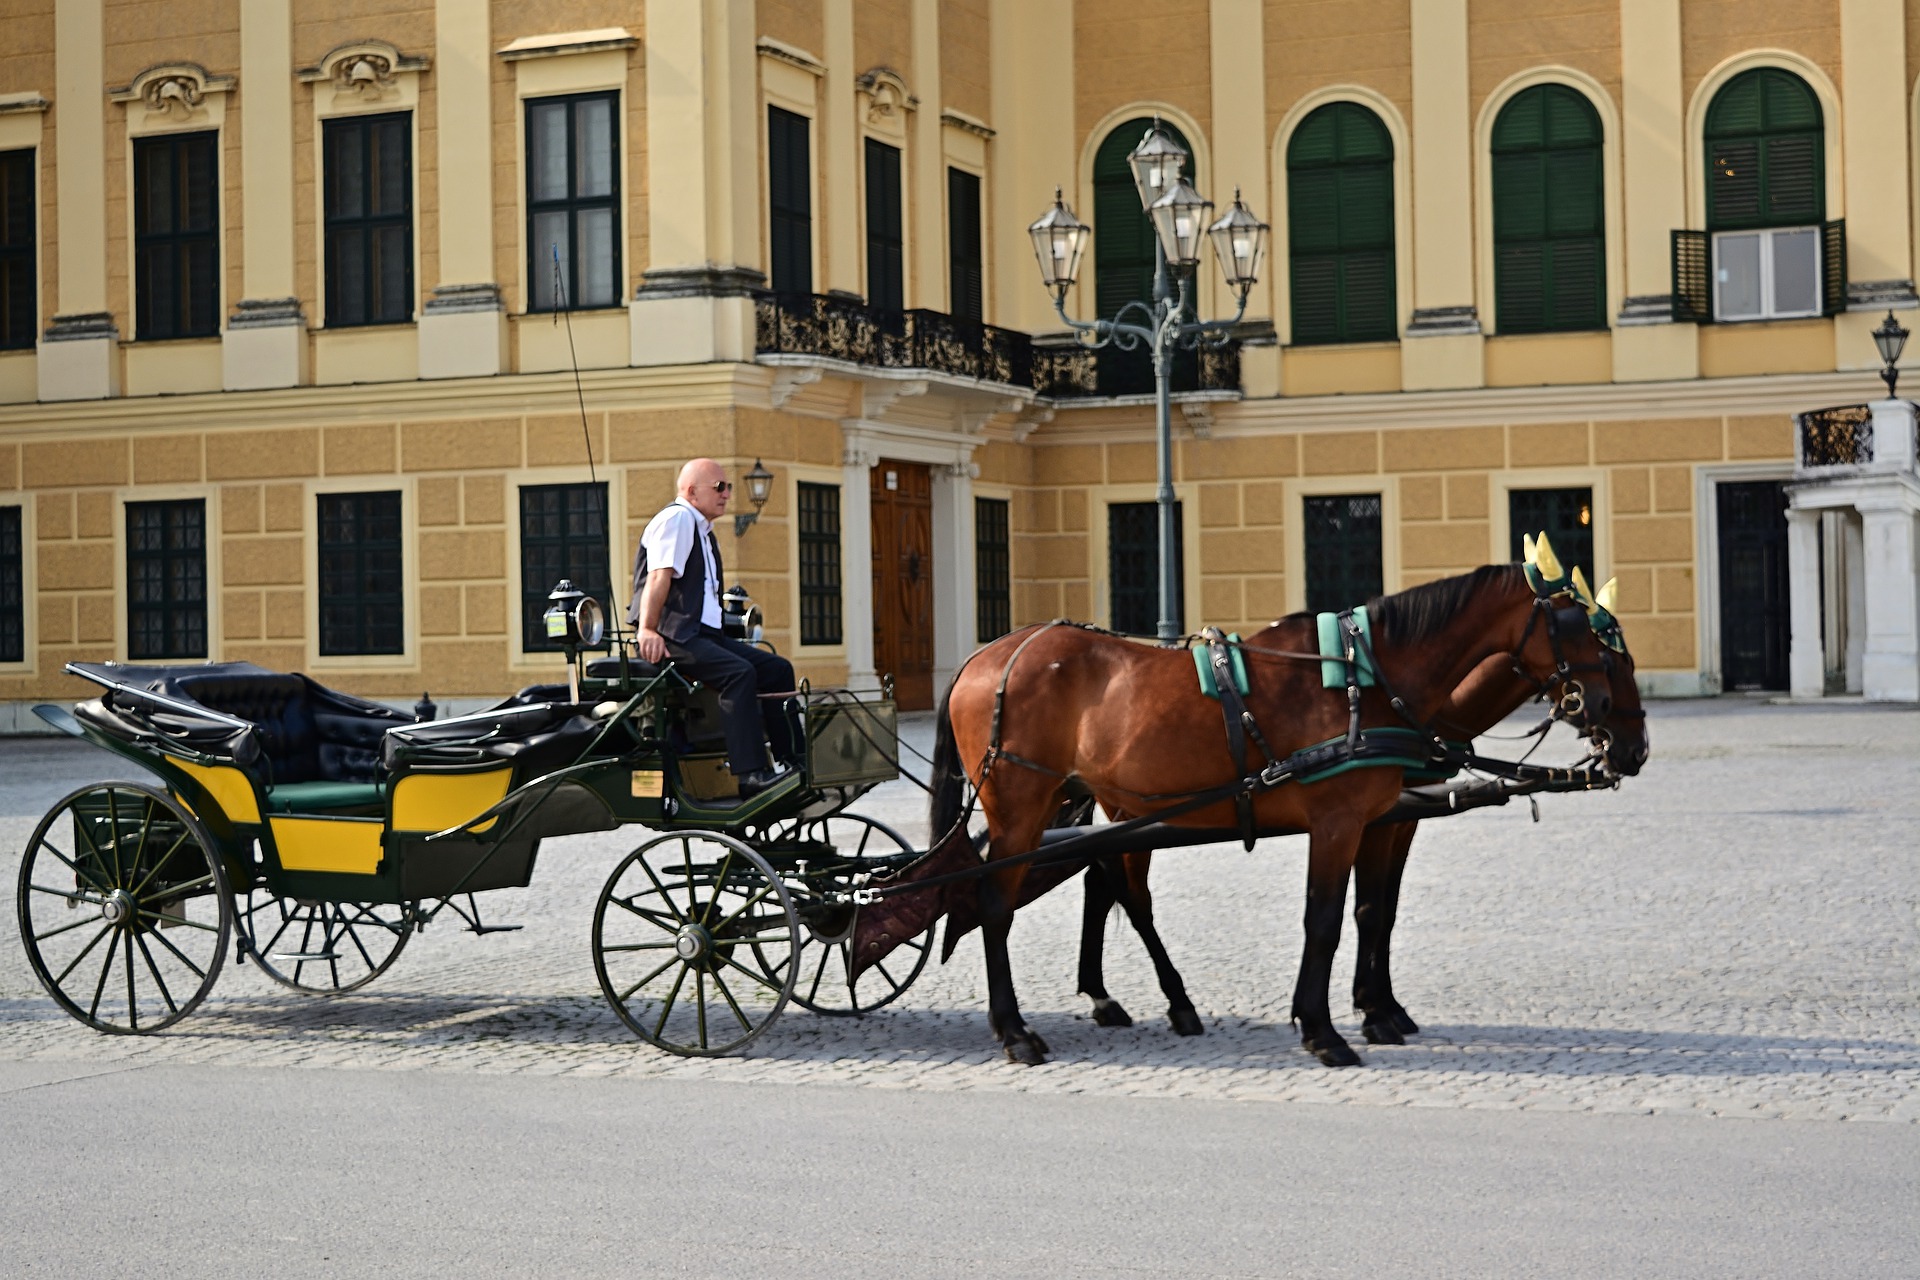 Busreise Wien Pferd und kutsche helles altes Gebäude im Hintergrund